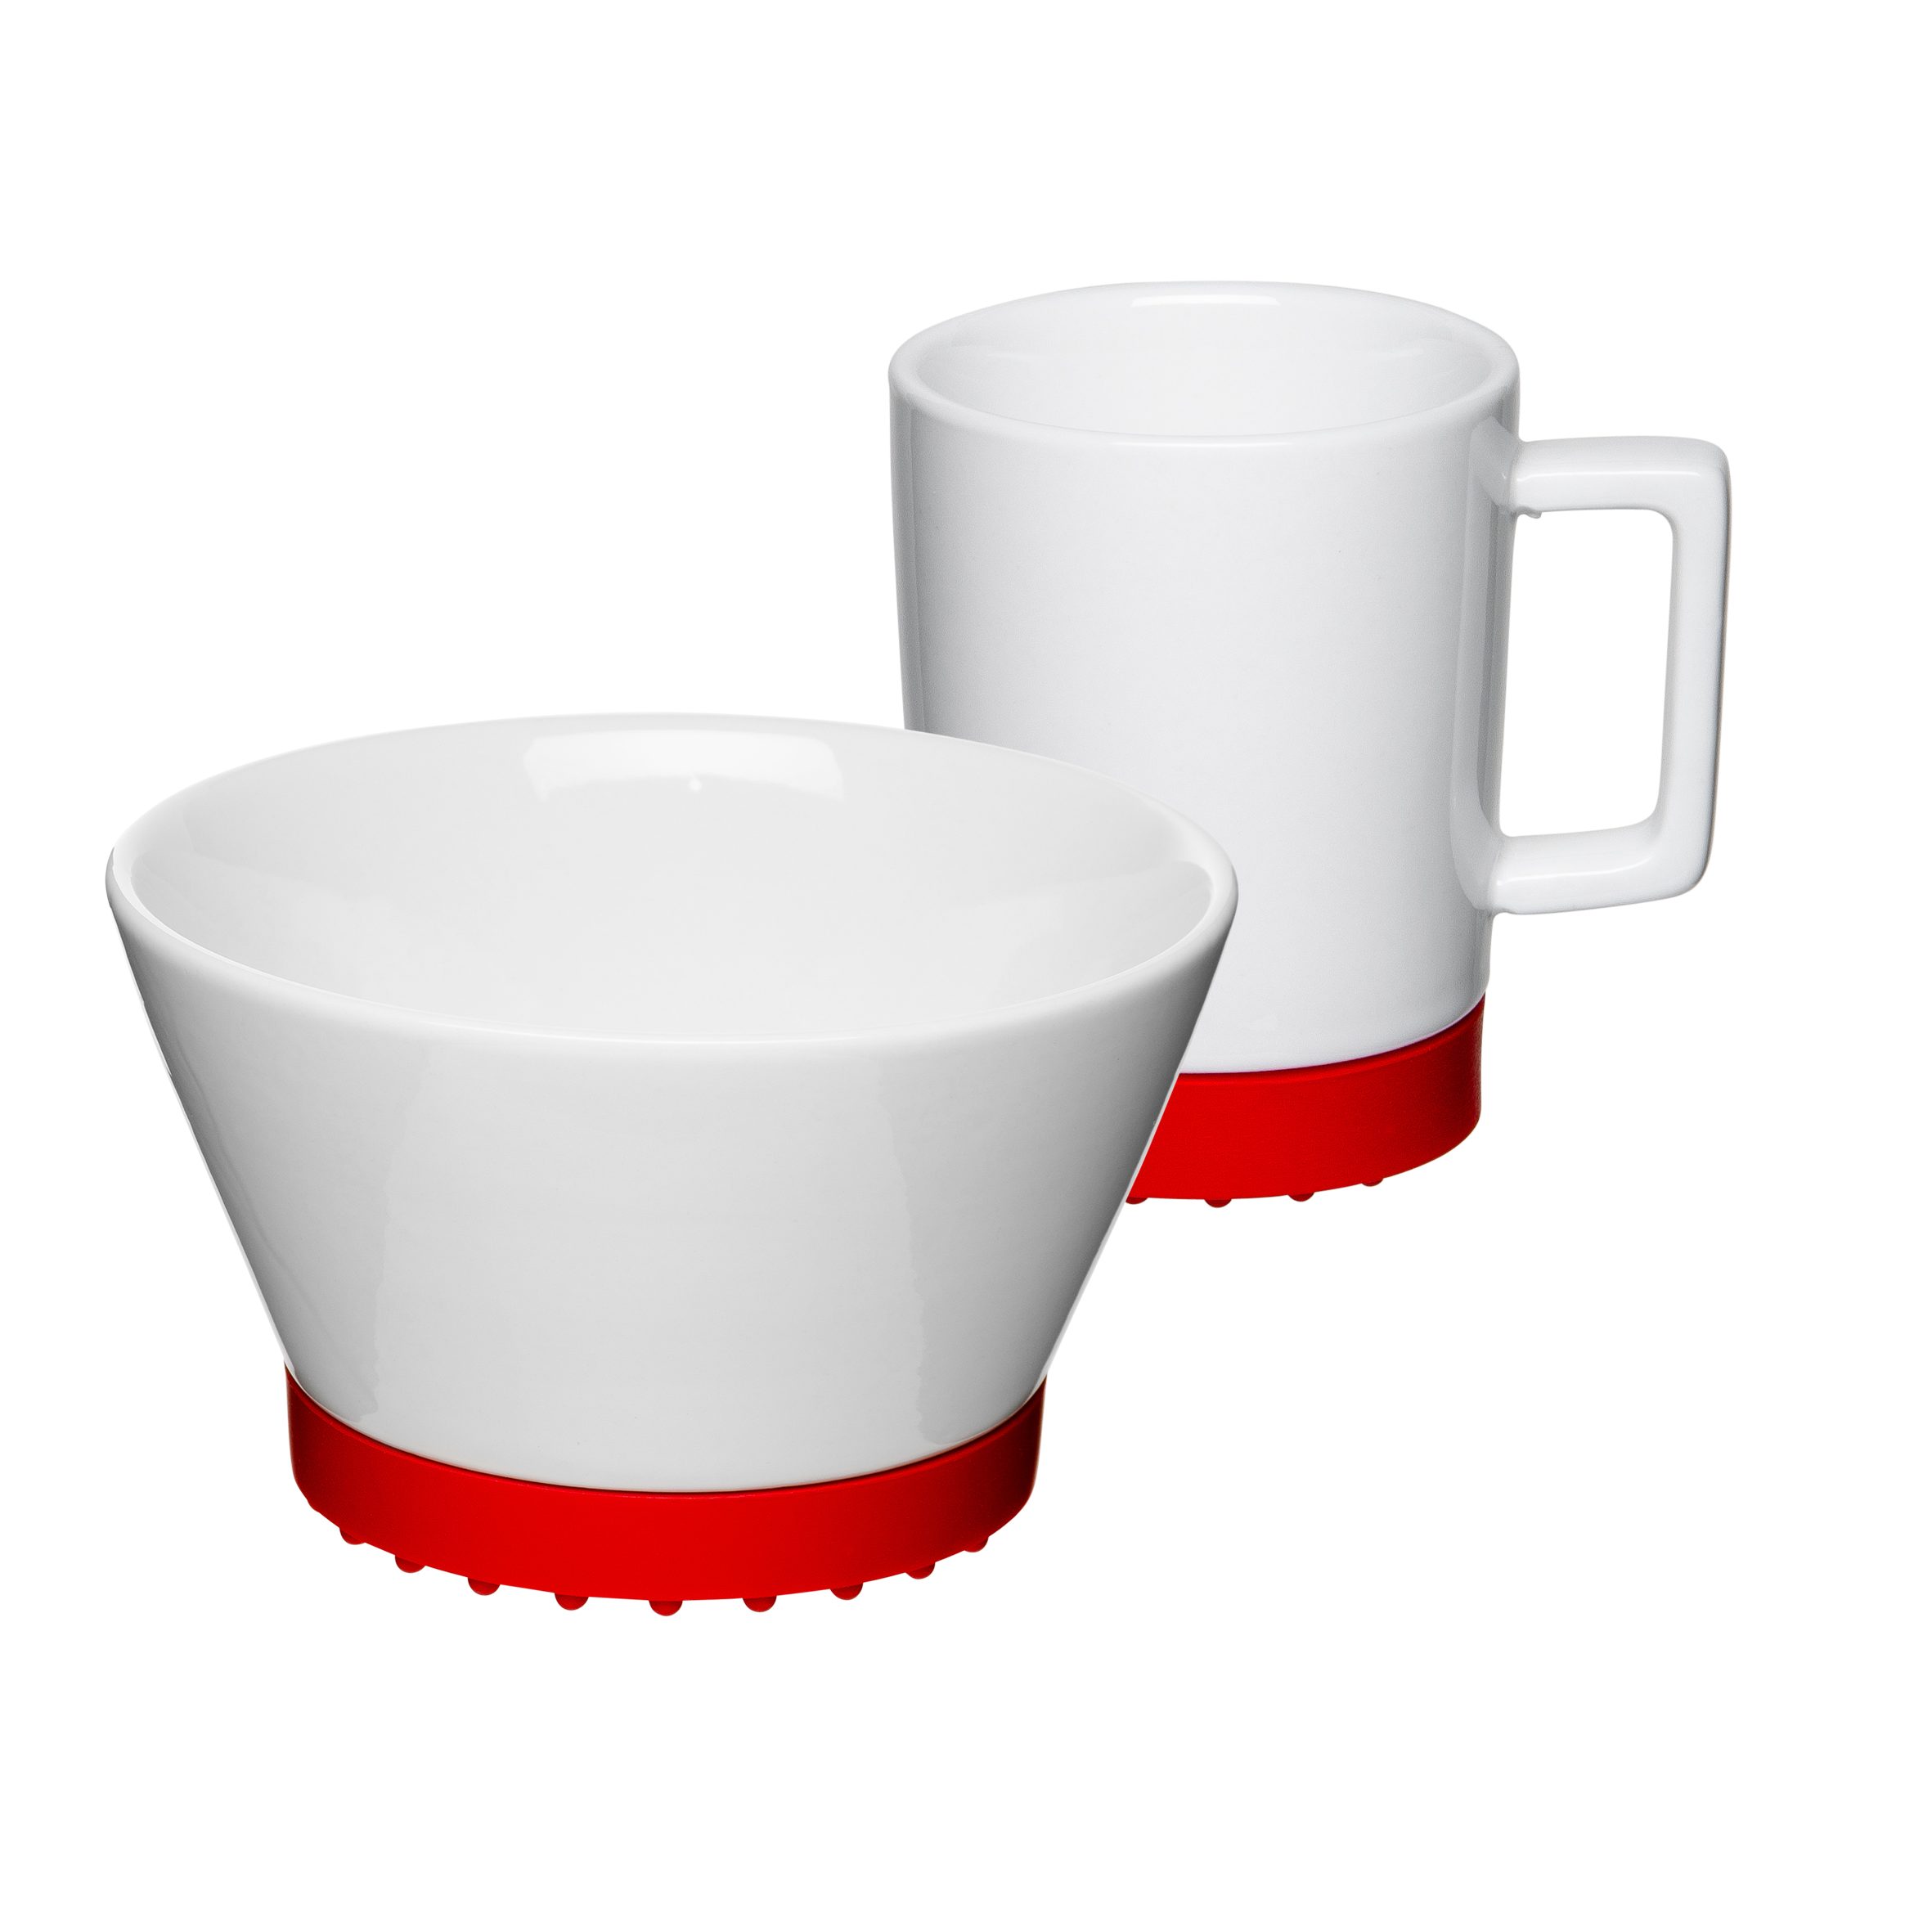 Mahlwerck Manufaktur Frühstücks-Geschirrset SoftPad (2-tlg), 1 Personen, Porzellan, 2-teilig, mikrowellengeeignet, spülmaschinengeeignet Red